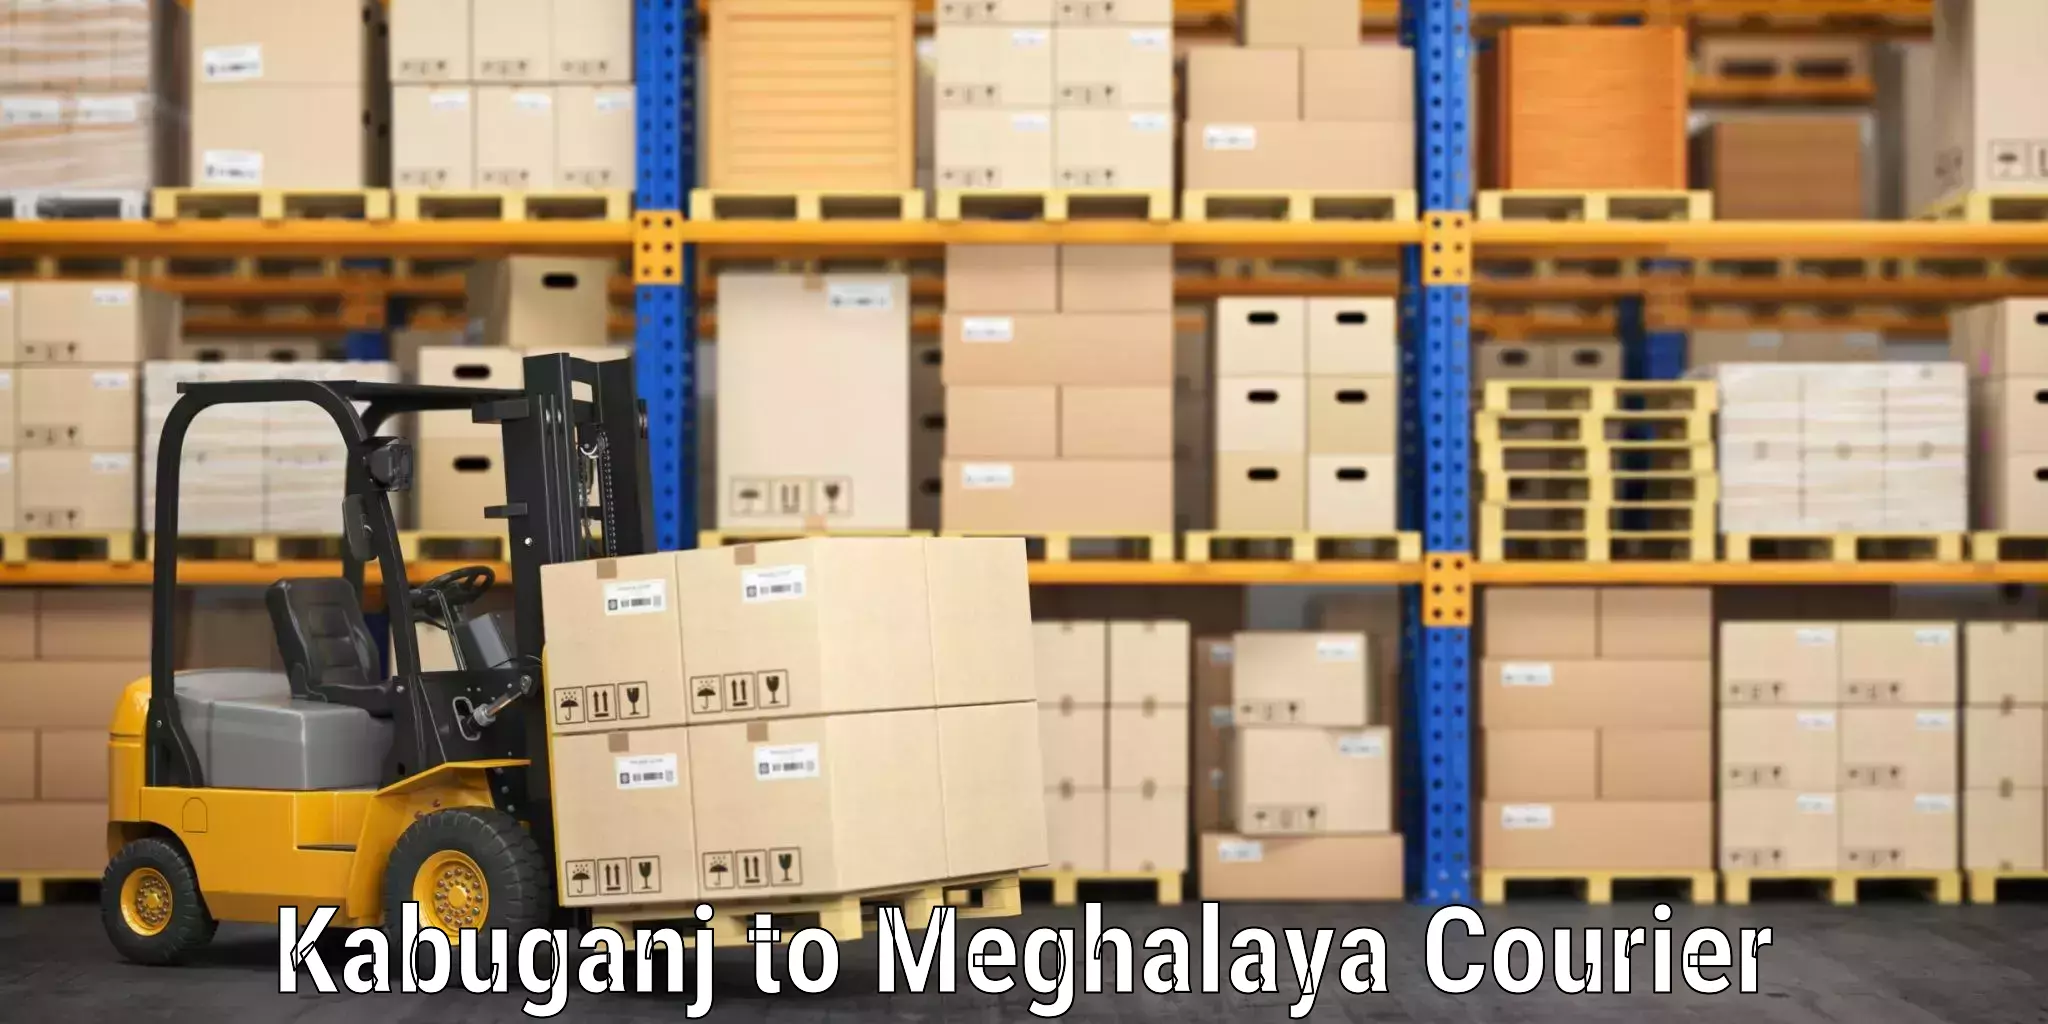 Luggage shipping trends Kabuganj to Meghalaya